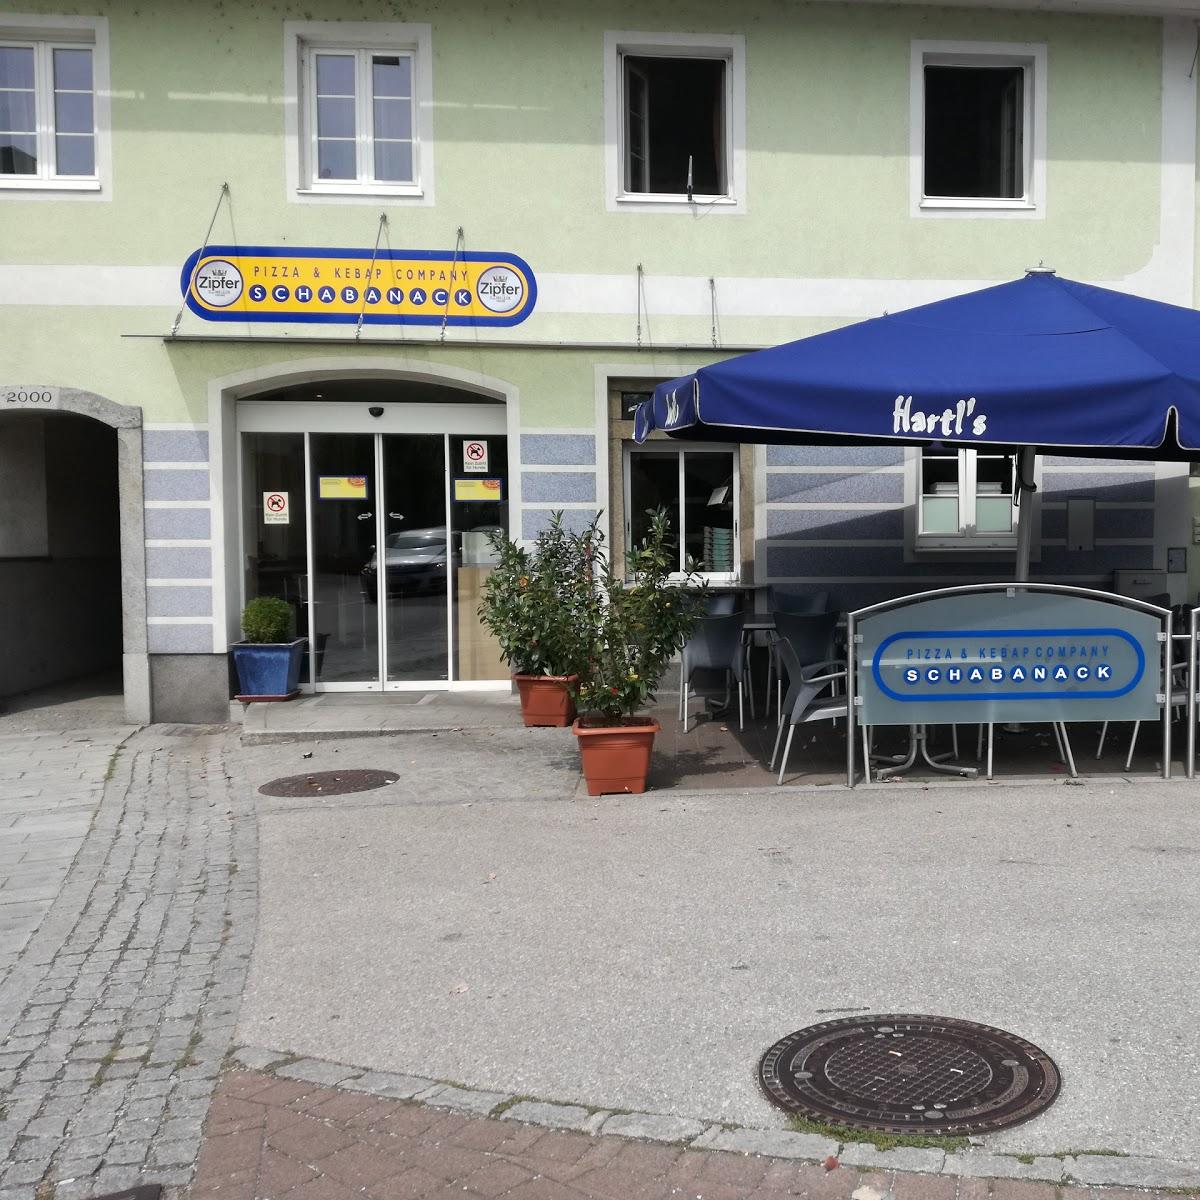 Restaurant "Schabanack" in Pichl bei Wels